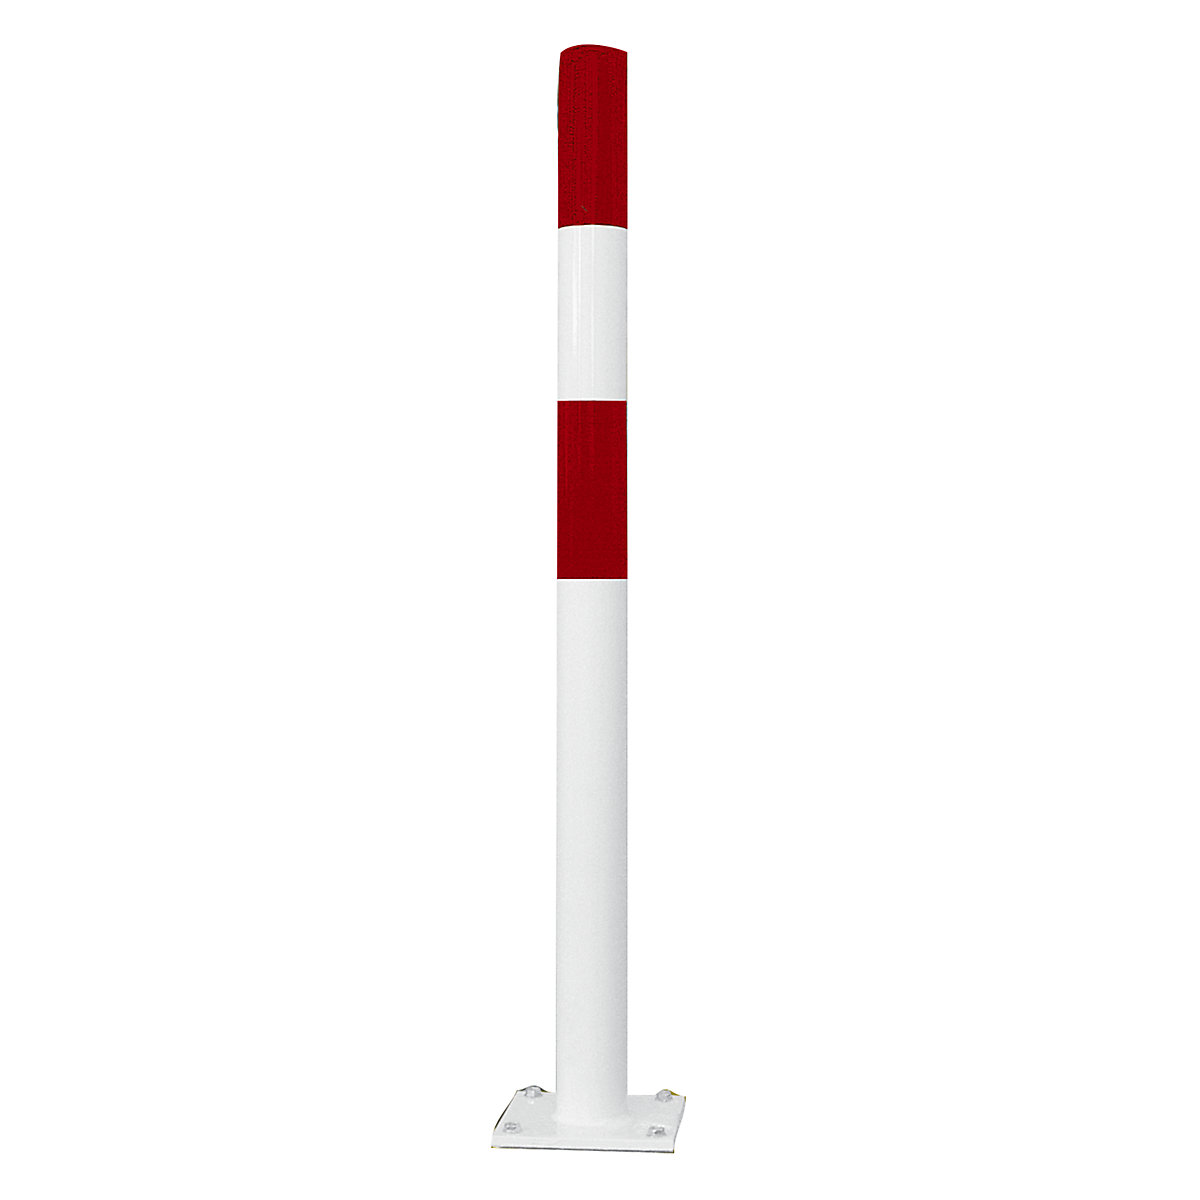 Poteau de protection, taille S, rouge / blanc, à cheviller-1